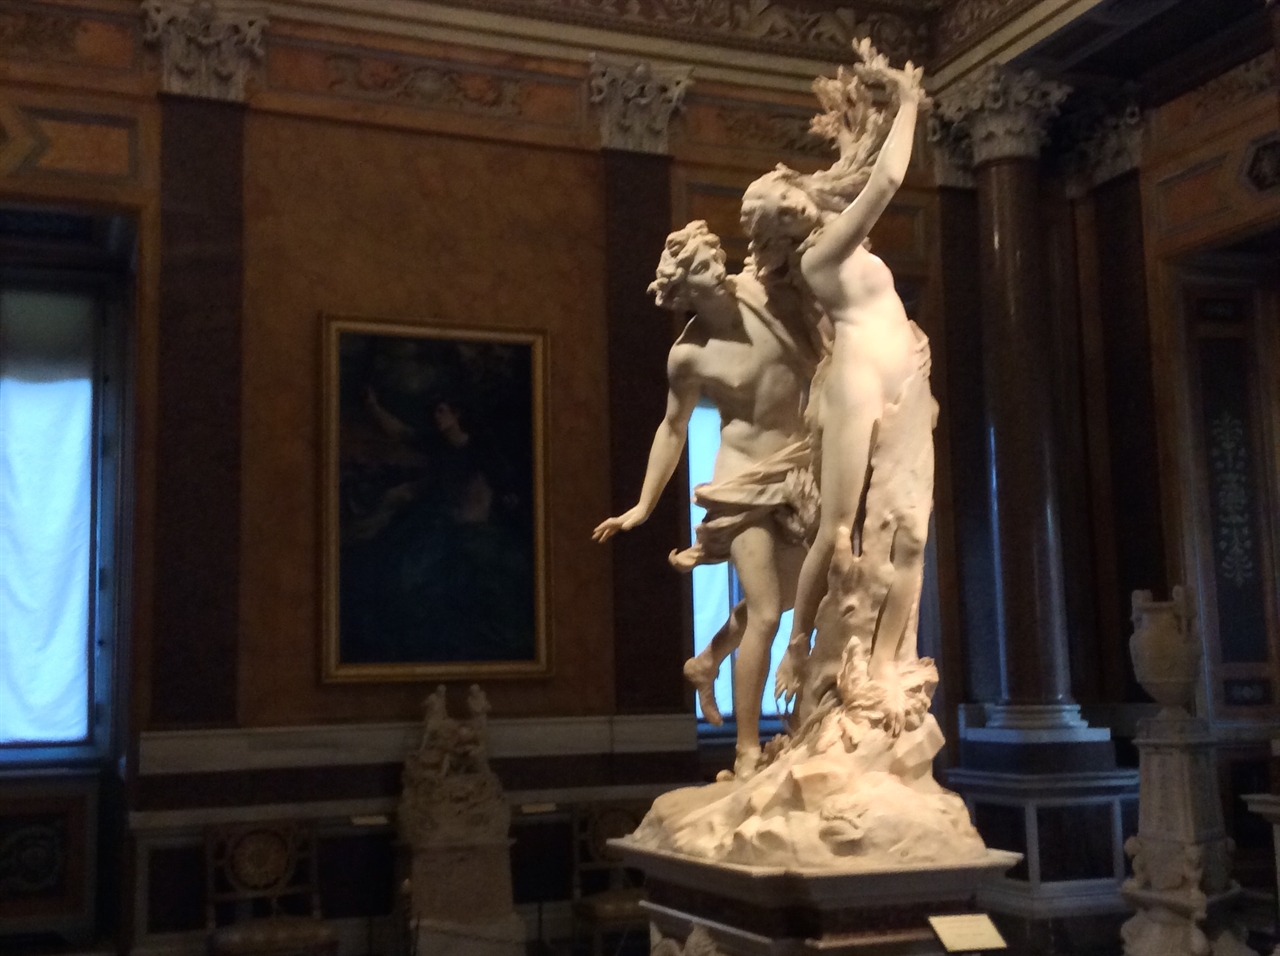 베르니니 '아폴론과 다프네' 로마 보르게세 미술관 (제 사춘기 시절, 그리움의 대상을 오랜 시간이 지나 이곳 보르게세 미술관에서 만났습니다.)